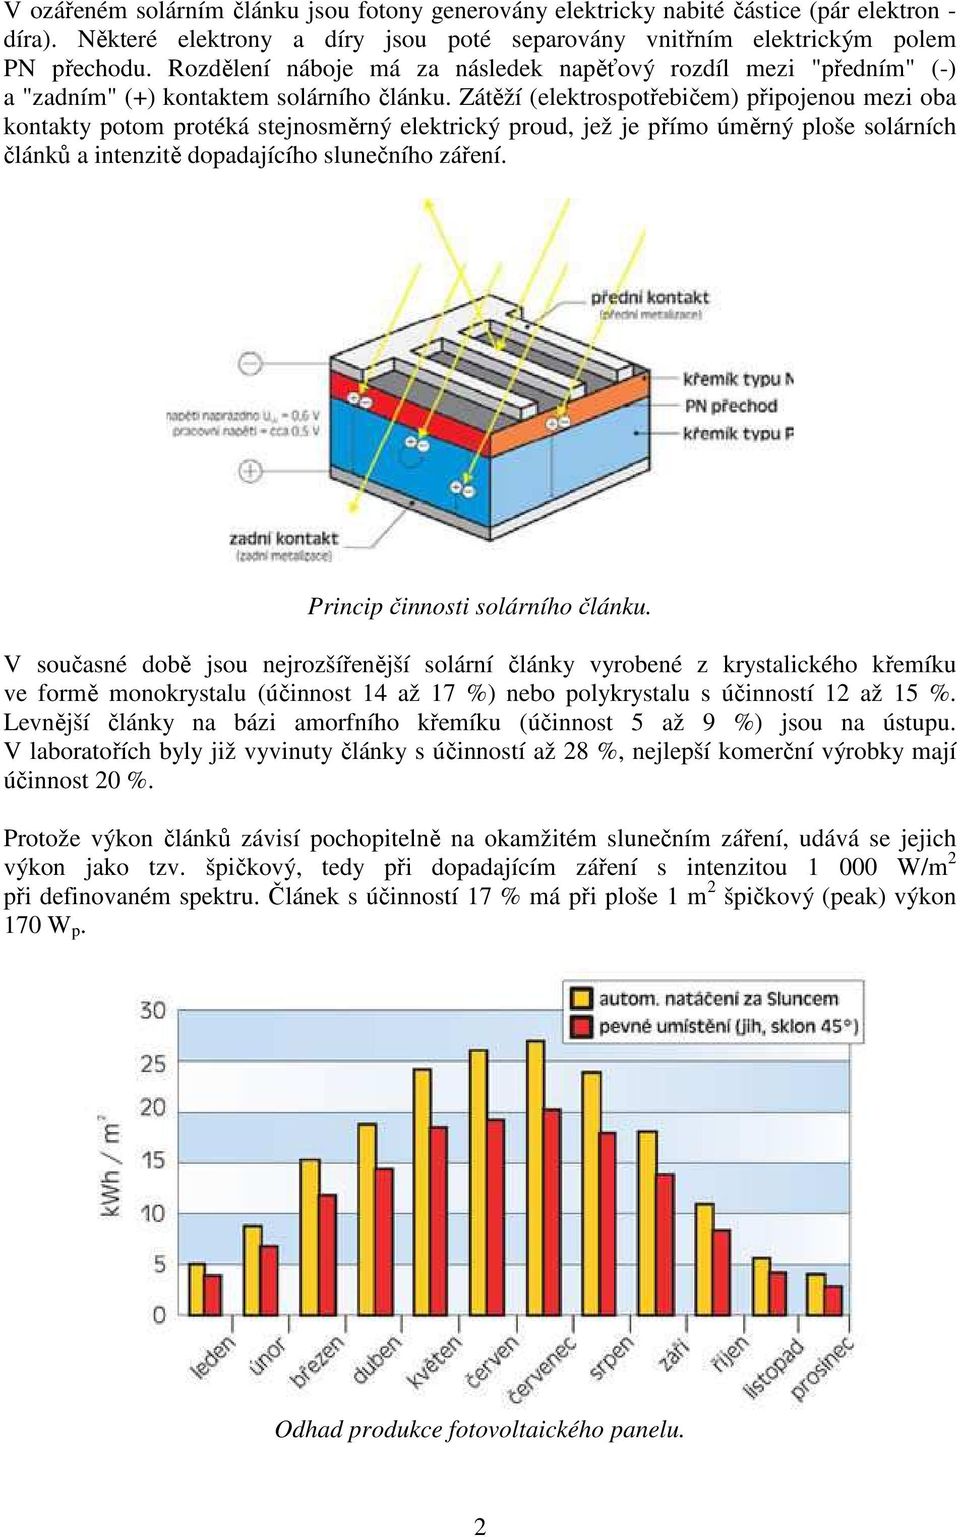 Zátěží (elektrospotřebičem) připojenou mezi oba kontakty potom protéká stejnosměrný elektrický proud, jež je přímo úměrný ploše solárních článků a intenzitě dopadajícího slunečního záření.